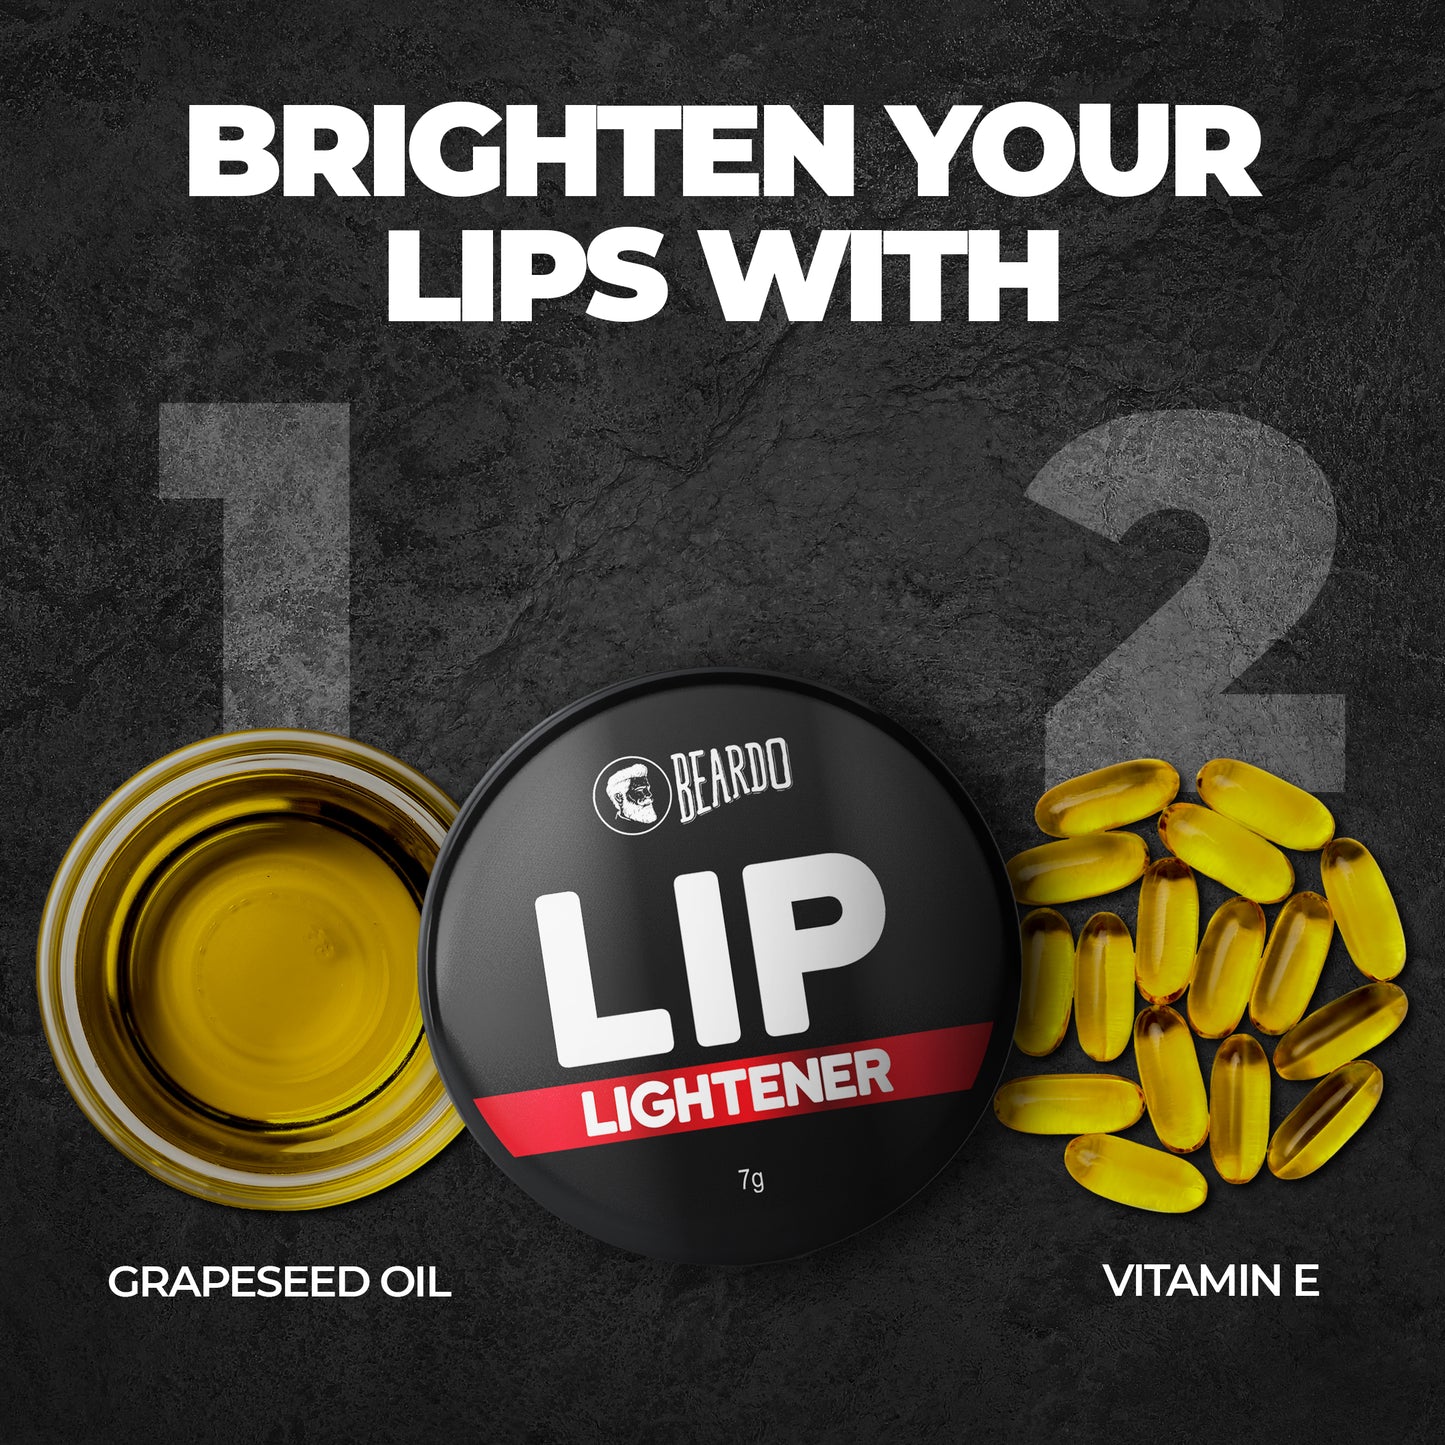 beardo lip lightener how to use, beardo lip whitener, lip balm for dark lips men, beardo lip, lightening lip balm